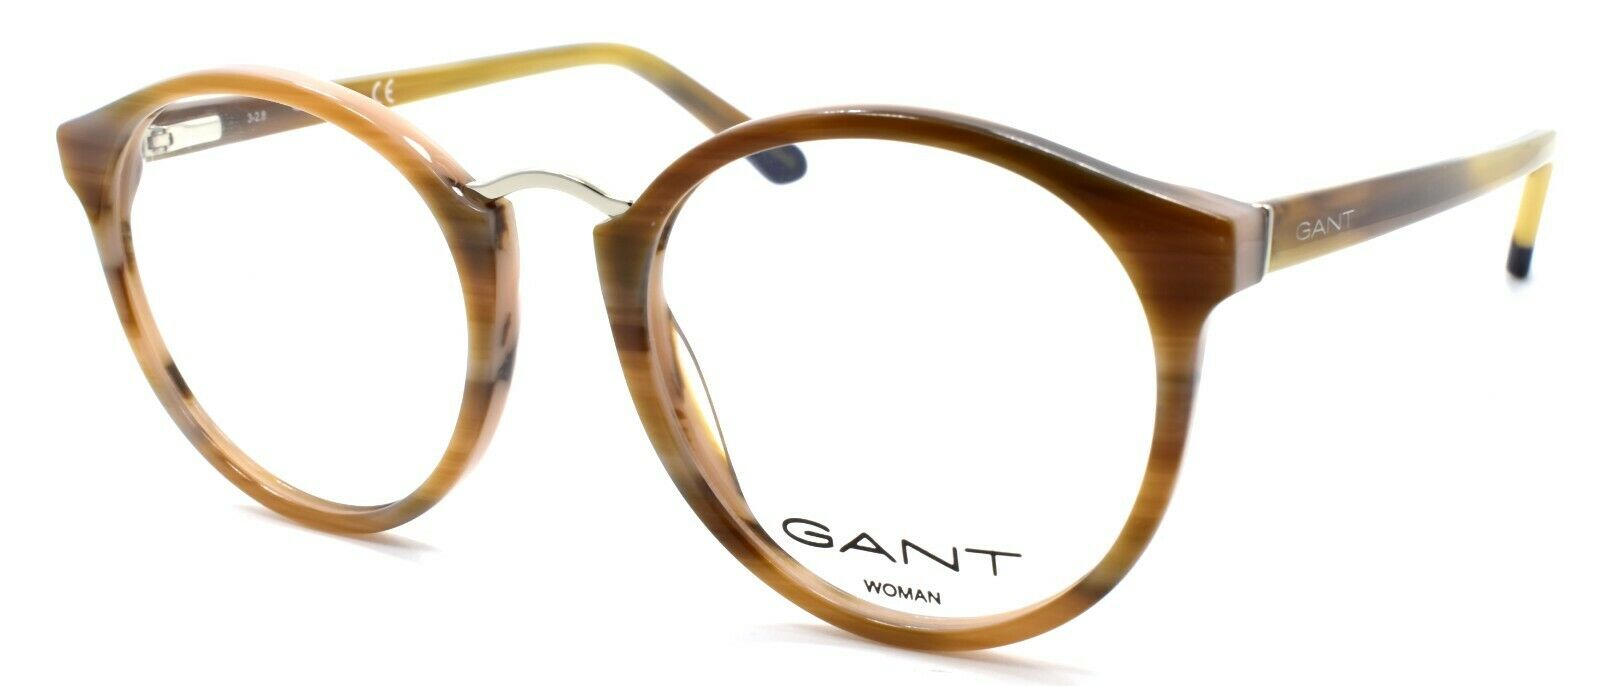 1-GANT GA4092 062 Women's Eyeglasses Frames 49-19-140 Brown Horn-889214047175-IKSpecs